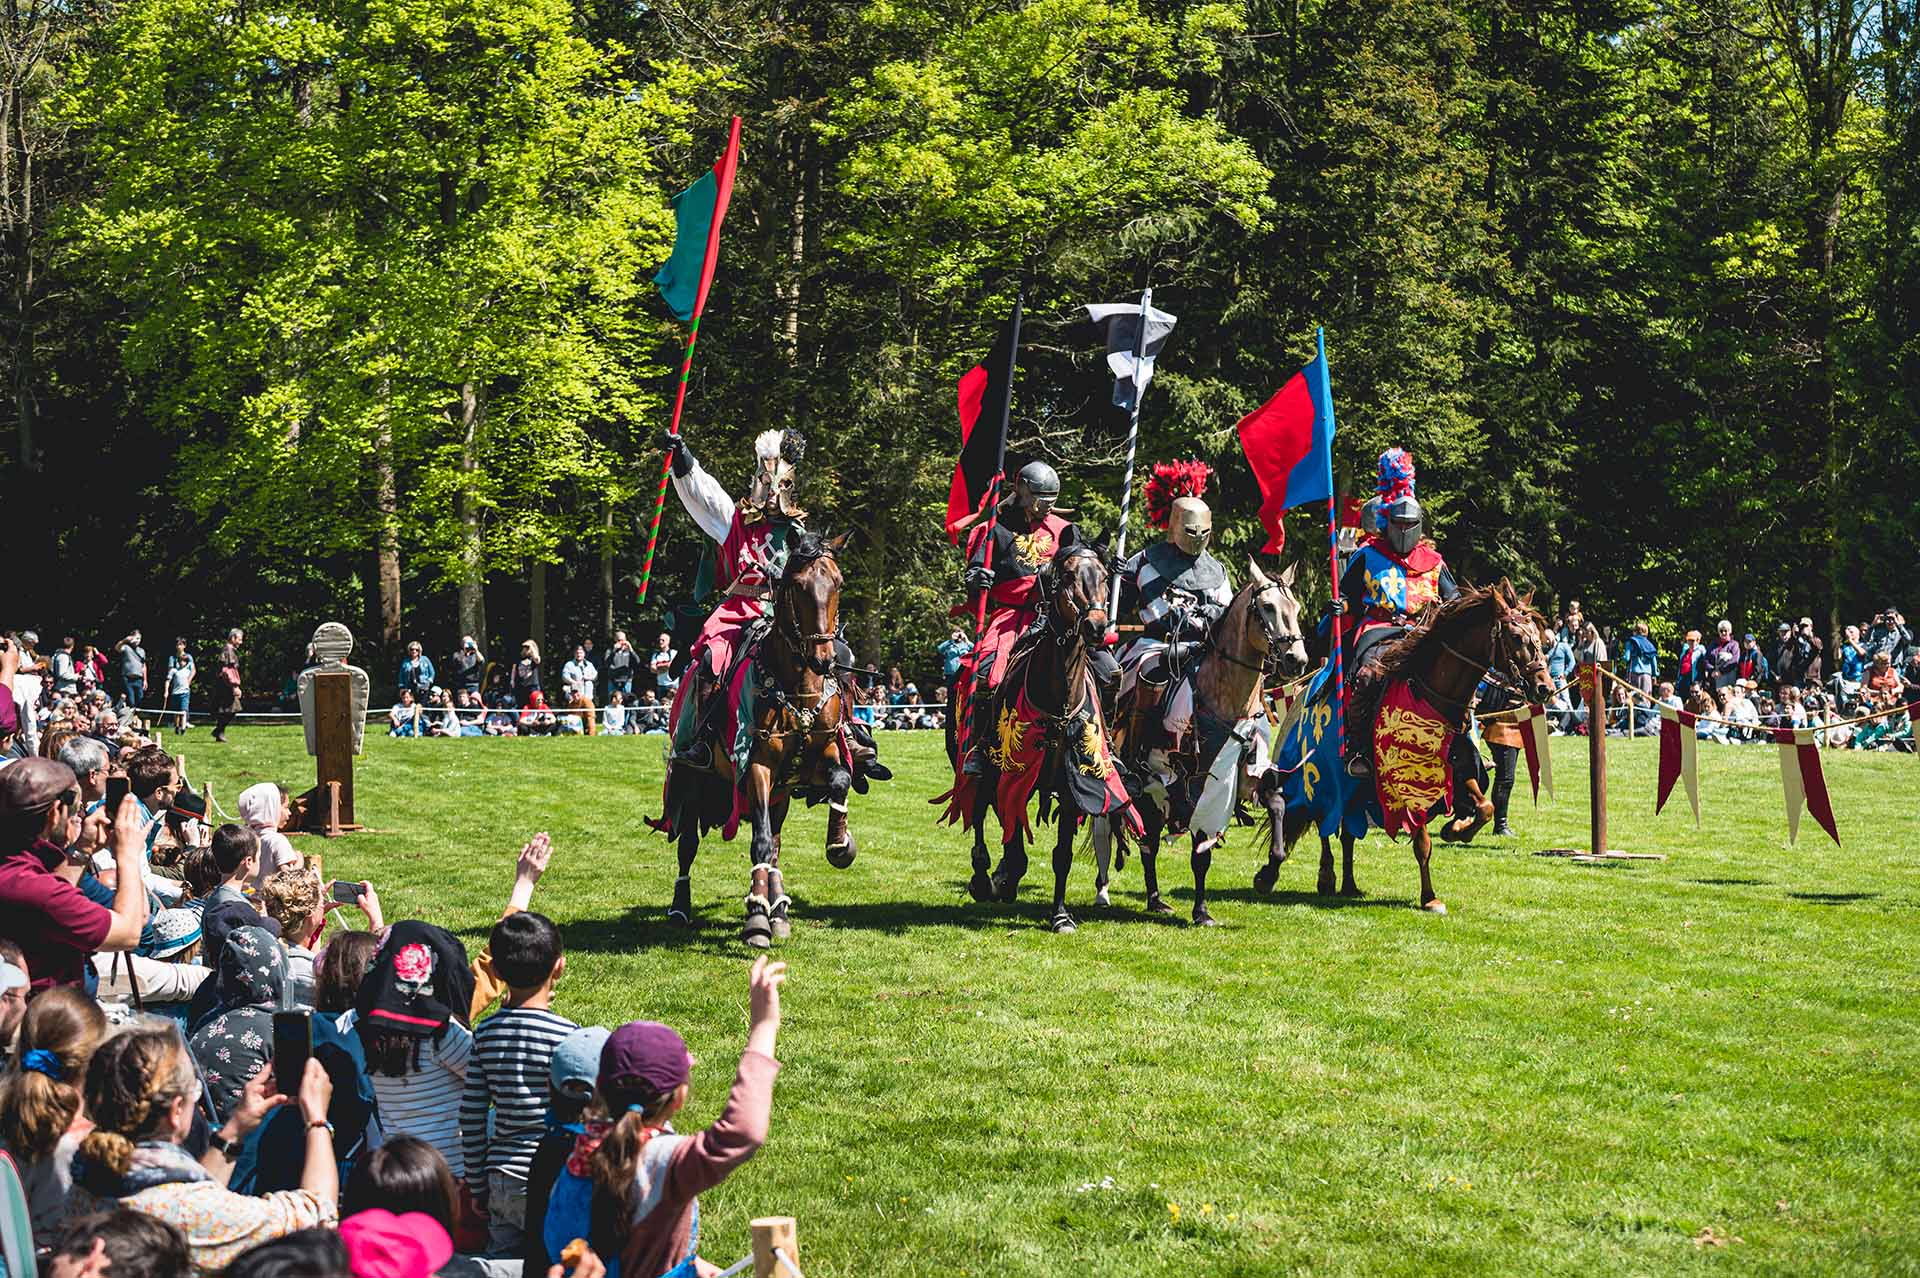 Quatre chevaliers médiévaux en armure colorée montent à cheval, portant des drapeaux, vers une foule assise sur l'herbe lors d'une foire de la Renaissance ou d'une joute. Le décor d’arbres verts luxuriants rehausse l’authenticité de la scène du Moyen Âge. Les spectateurs, y compris les enfants et les adultes, regardent avec impatience et saluent les chevaliers.